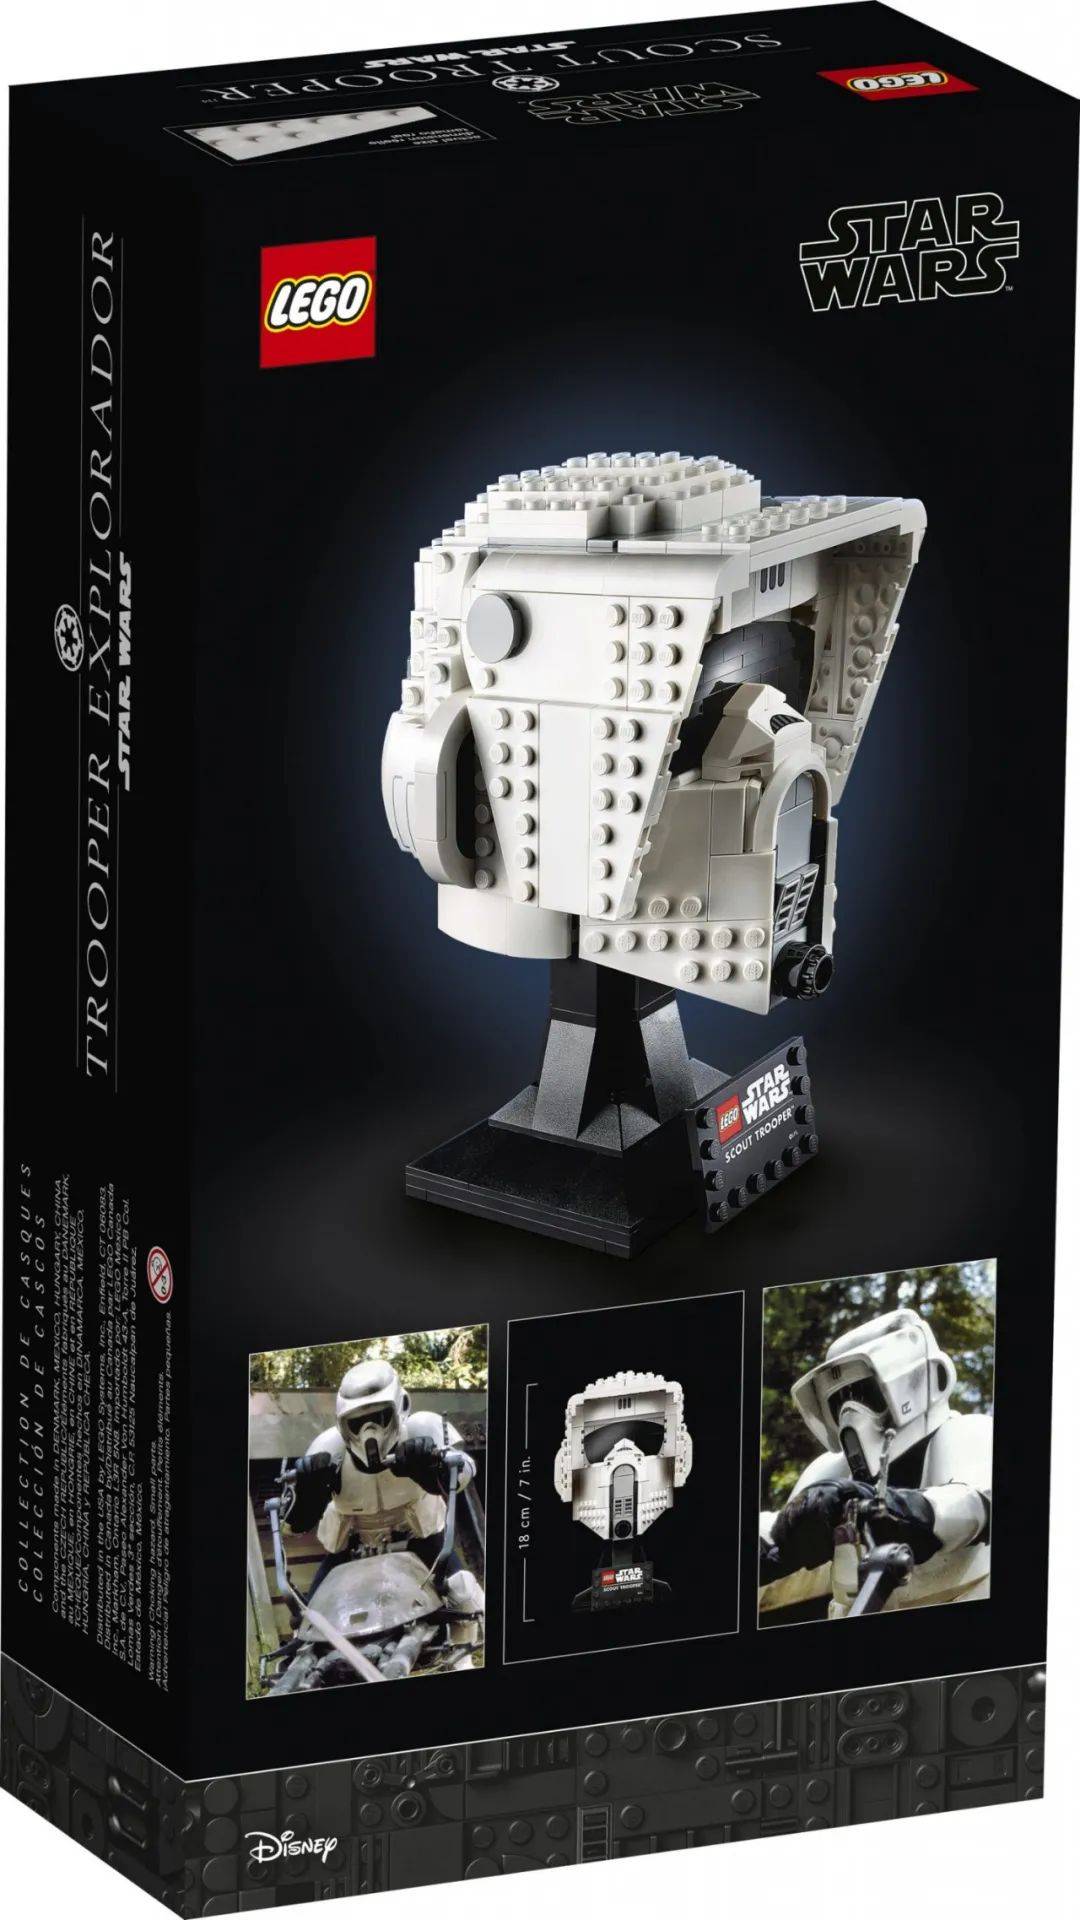 乐高星球大战两款新头雕套装和75306帝国探测机器人官图曝光 -1